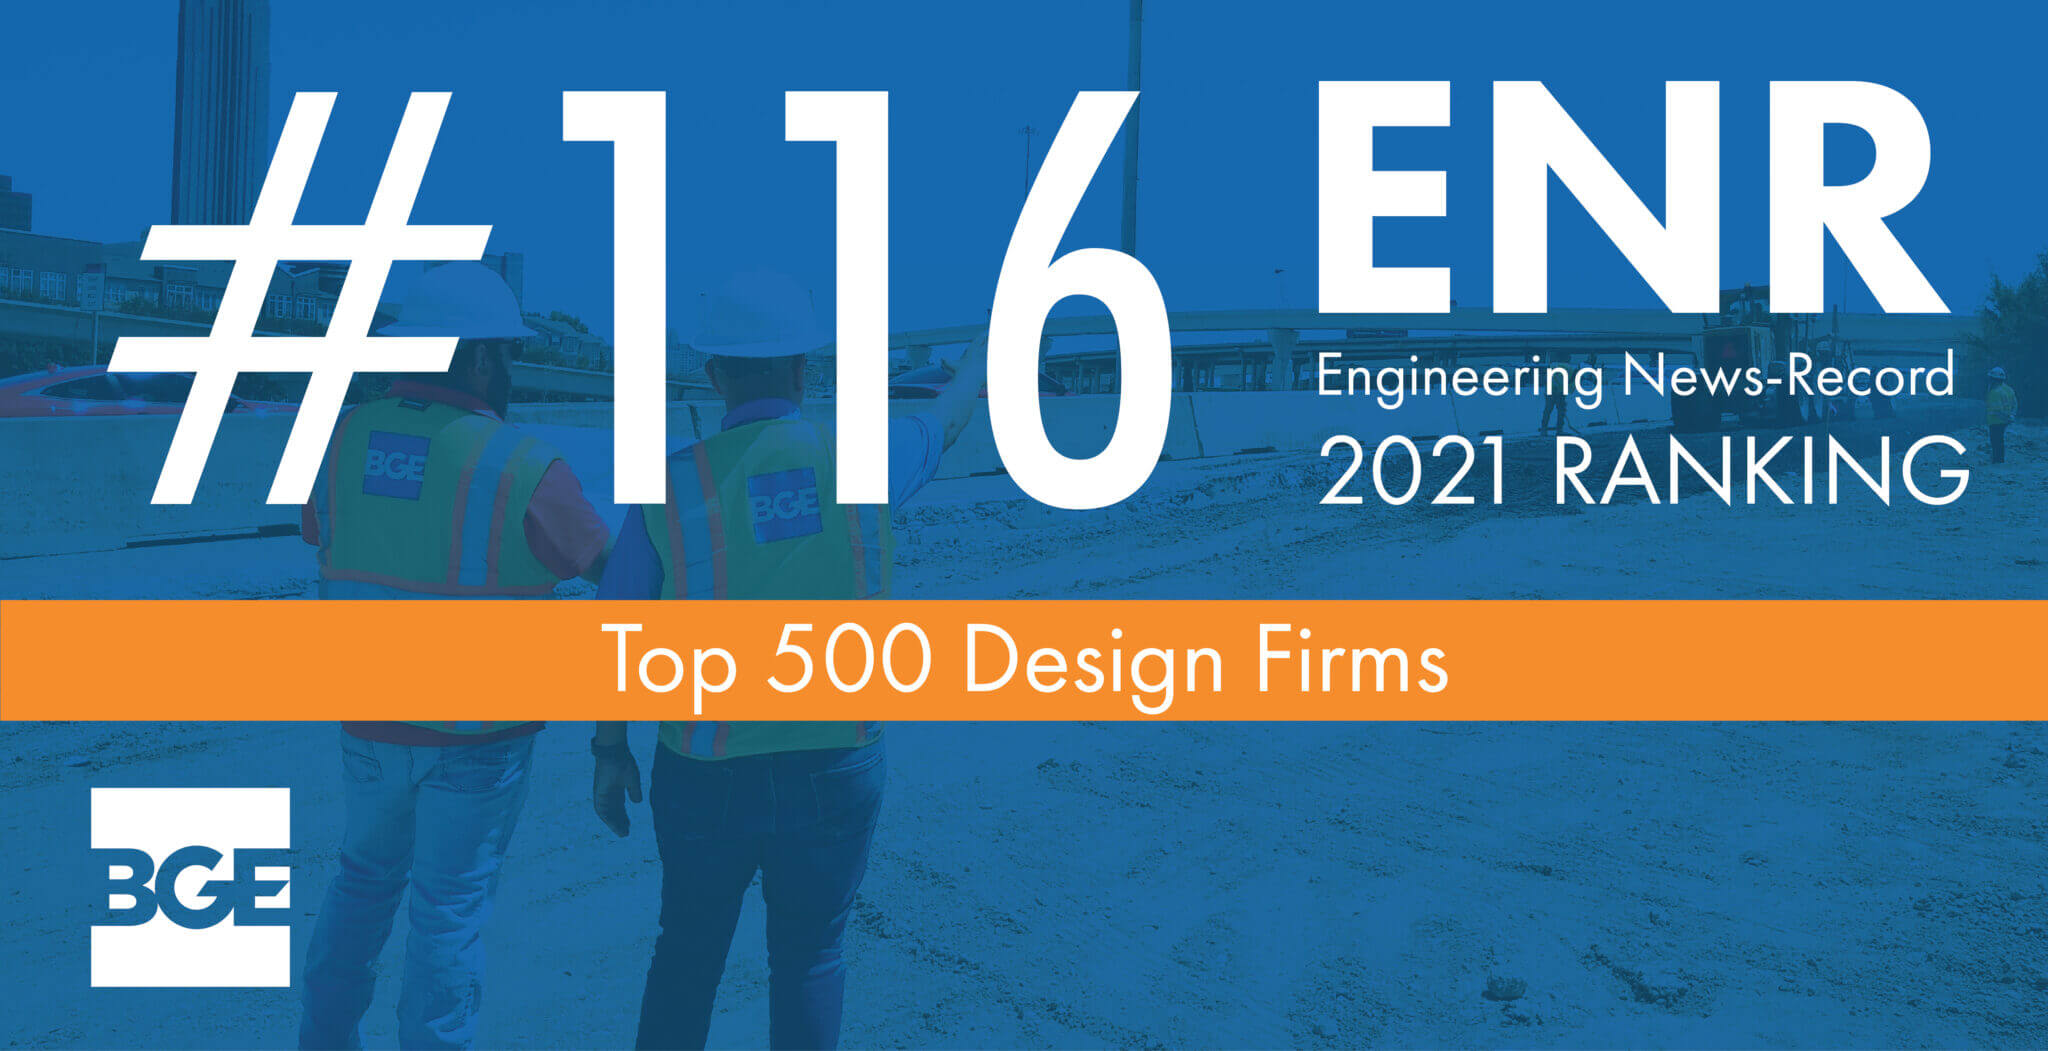 BGE Ranked No. 116 on ENR’s 2021 Top 500 Design Firms List BGE, Inc.